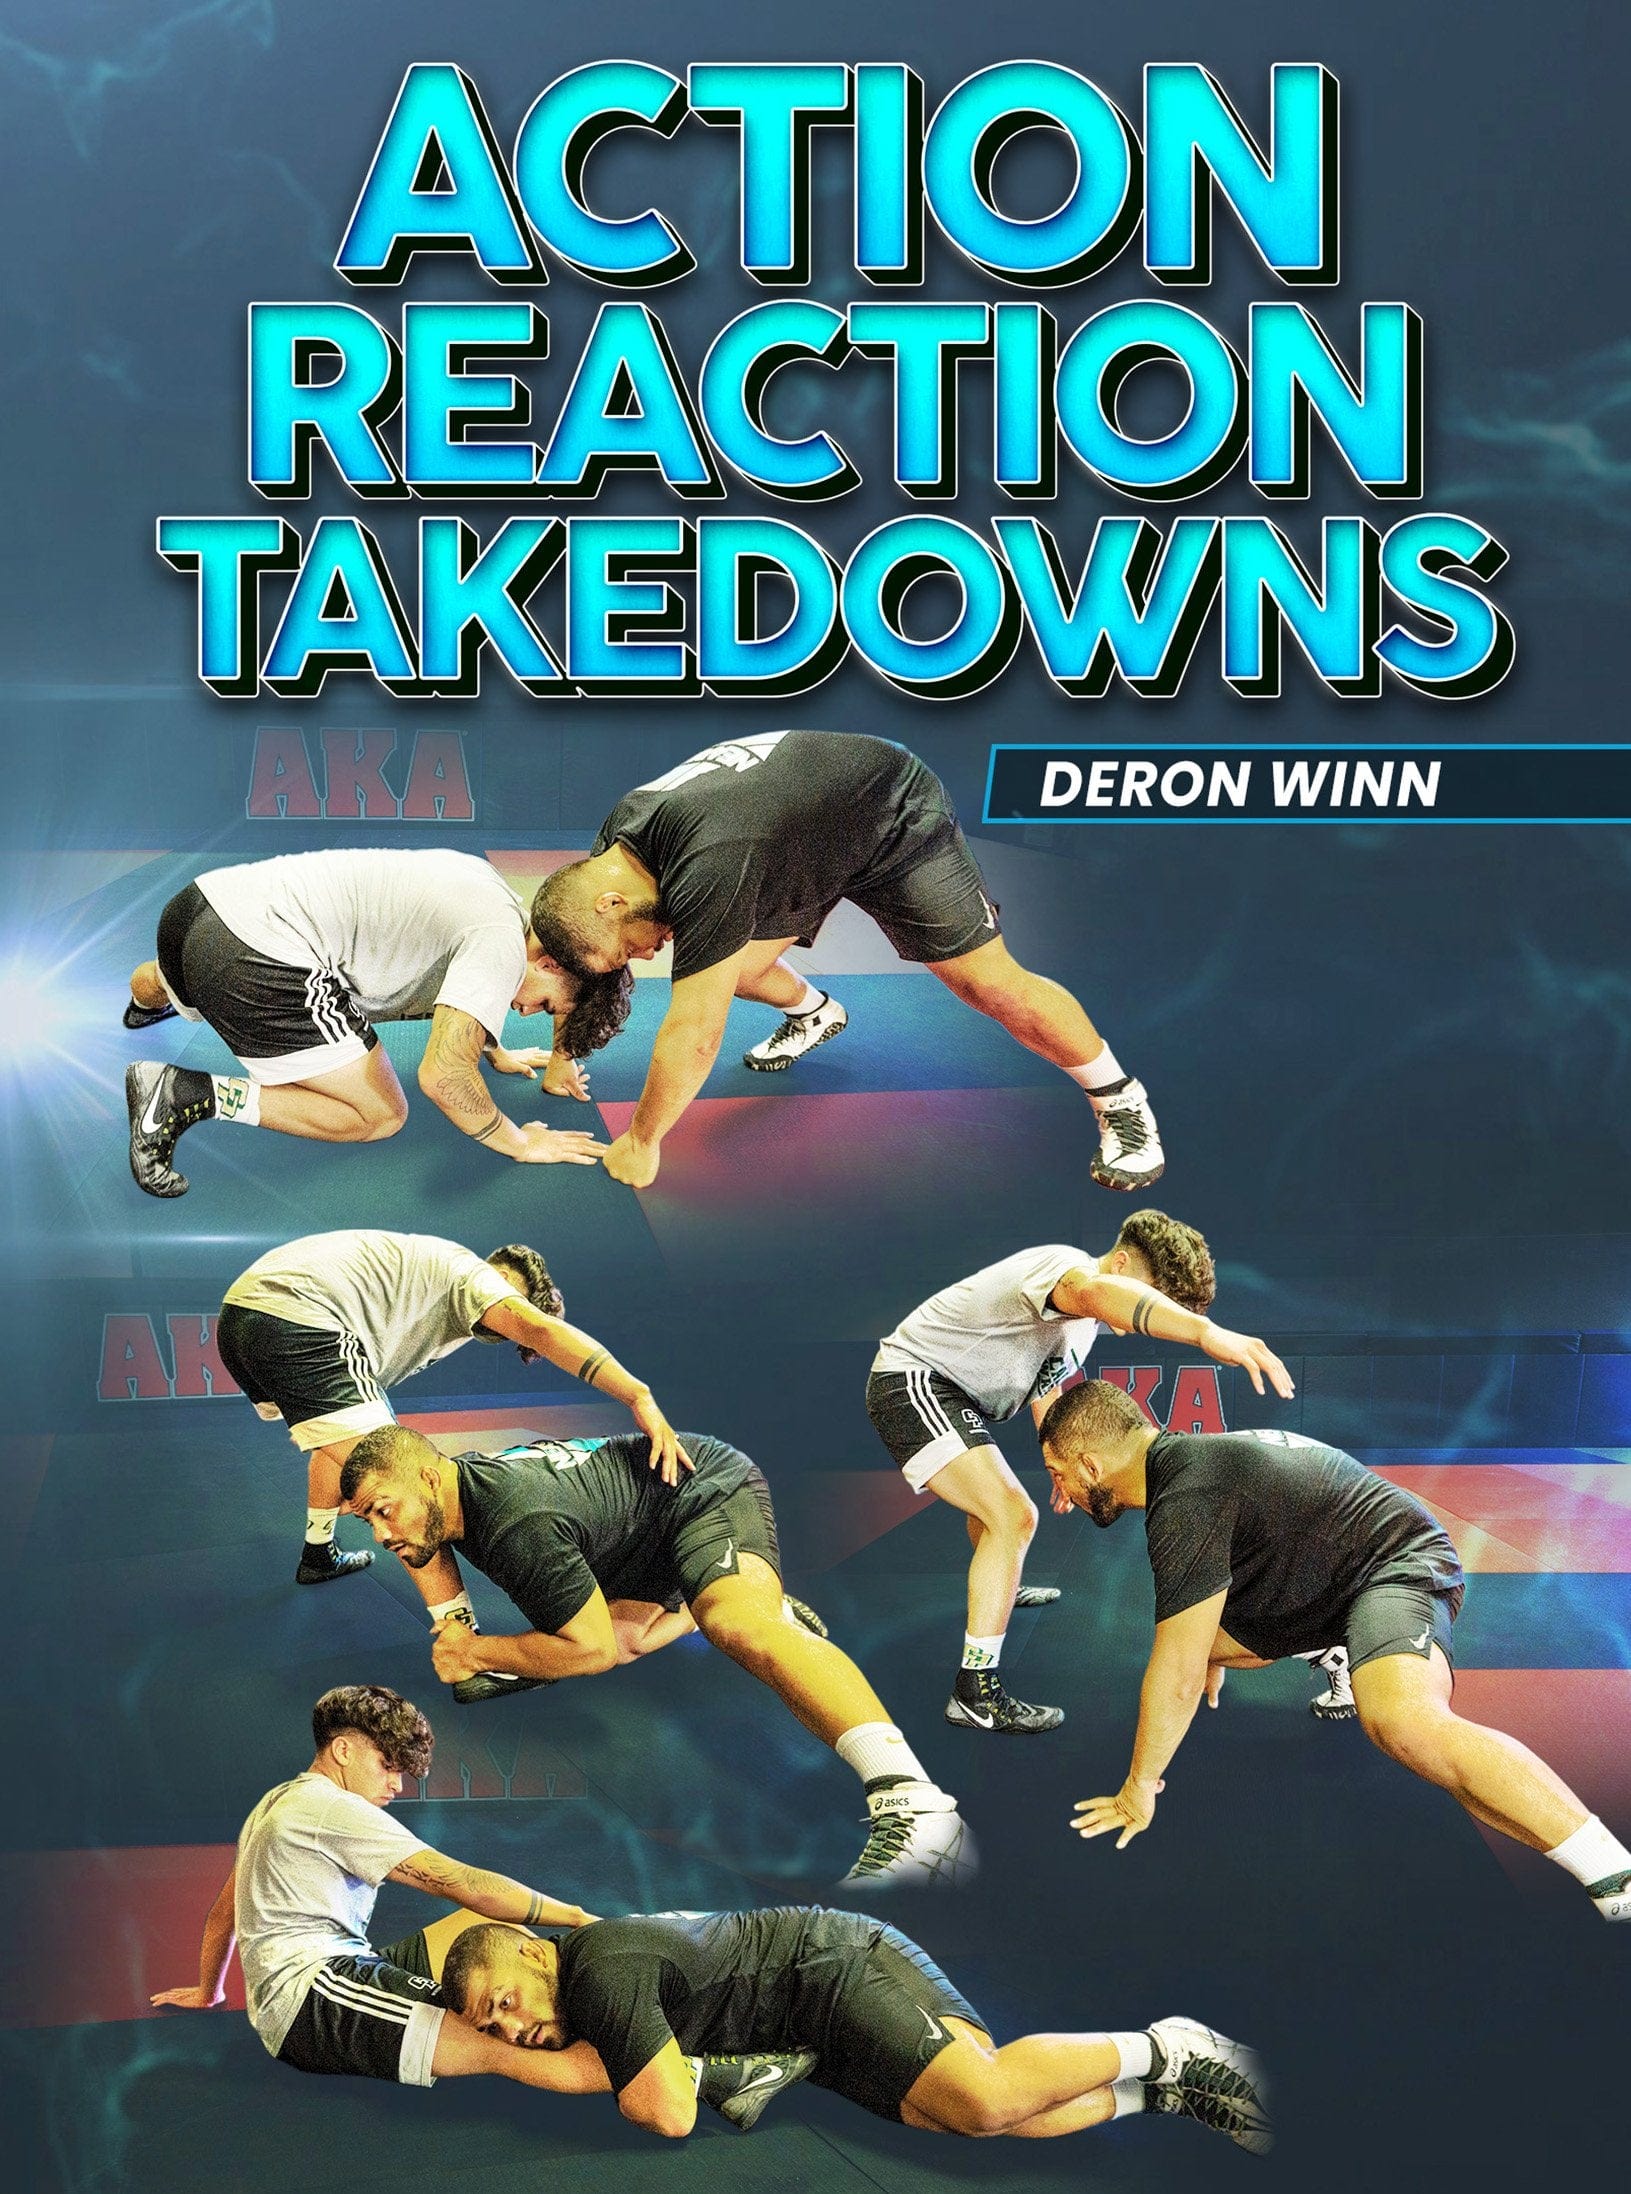 Action Reaction Takedowns by Deron Winn - Fanatic Wrestling